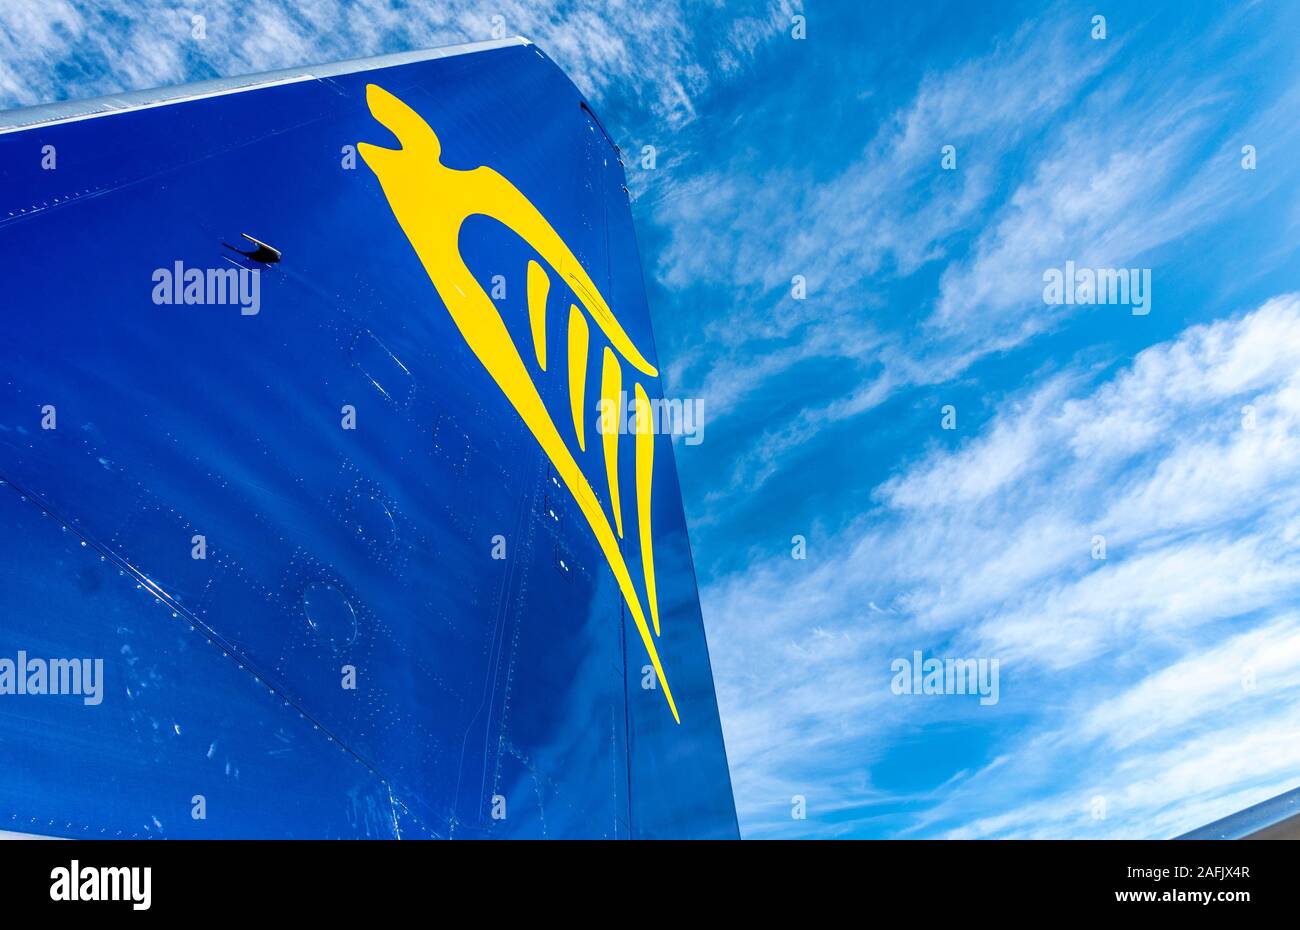 Heckflosse oder Segel einer Ryanair Boeing 737-800 Flugzeuge der Serie zeigen Firmenlogo Harfe Design. Stockfoto